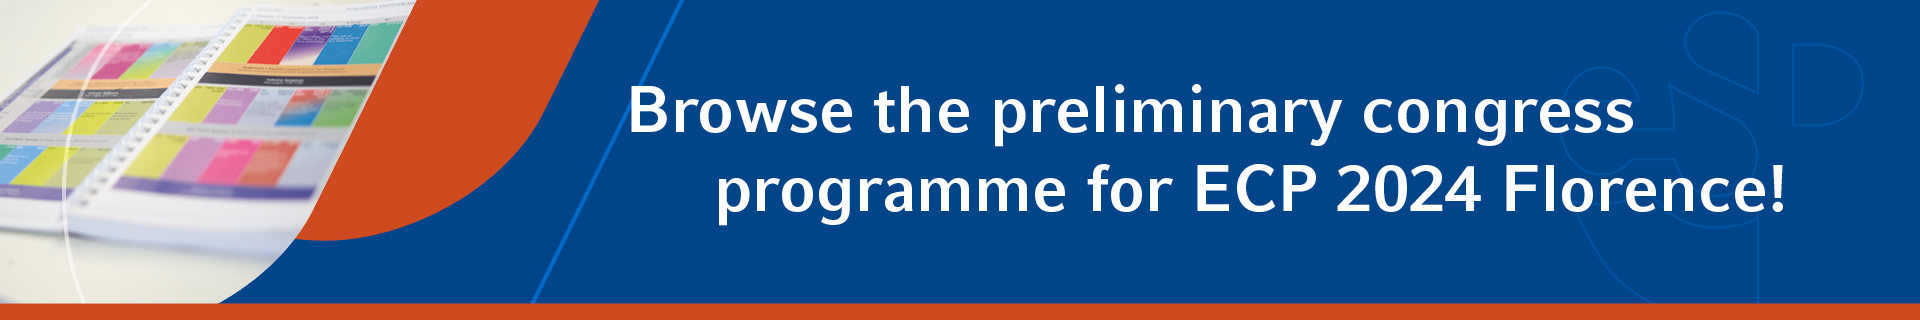 Browse the preliminary congress programme for the ECP 2023 Dublin